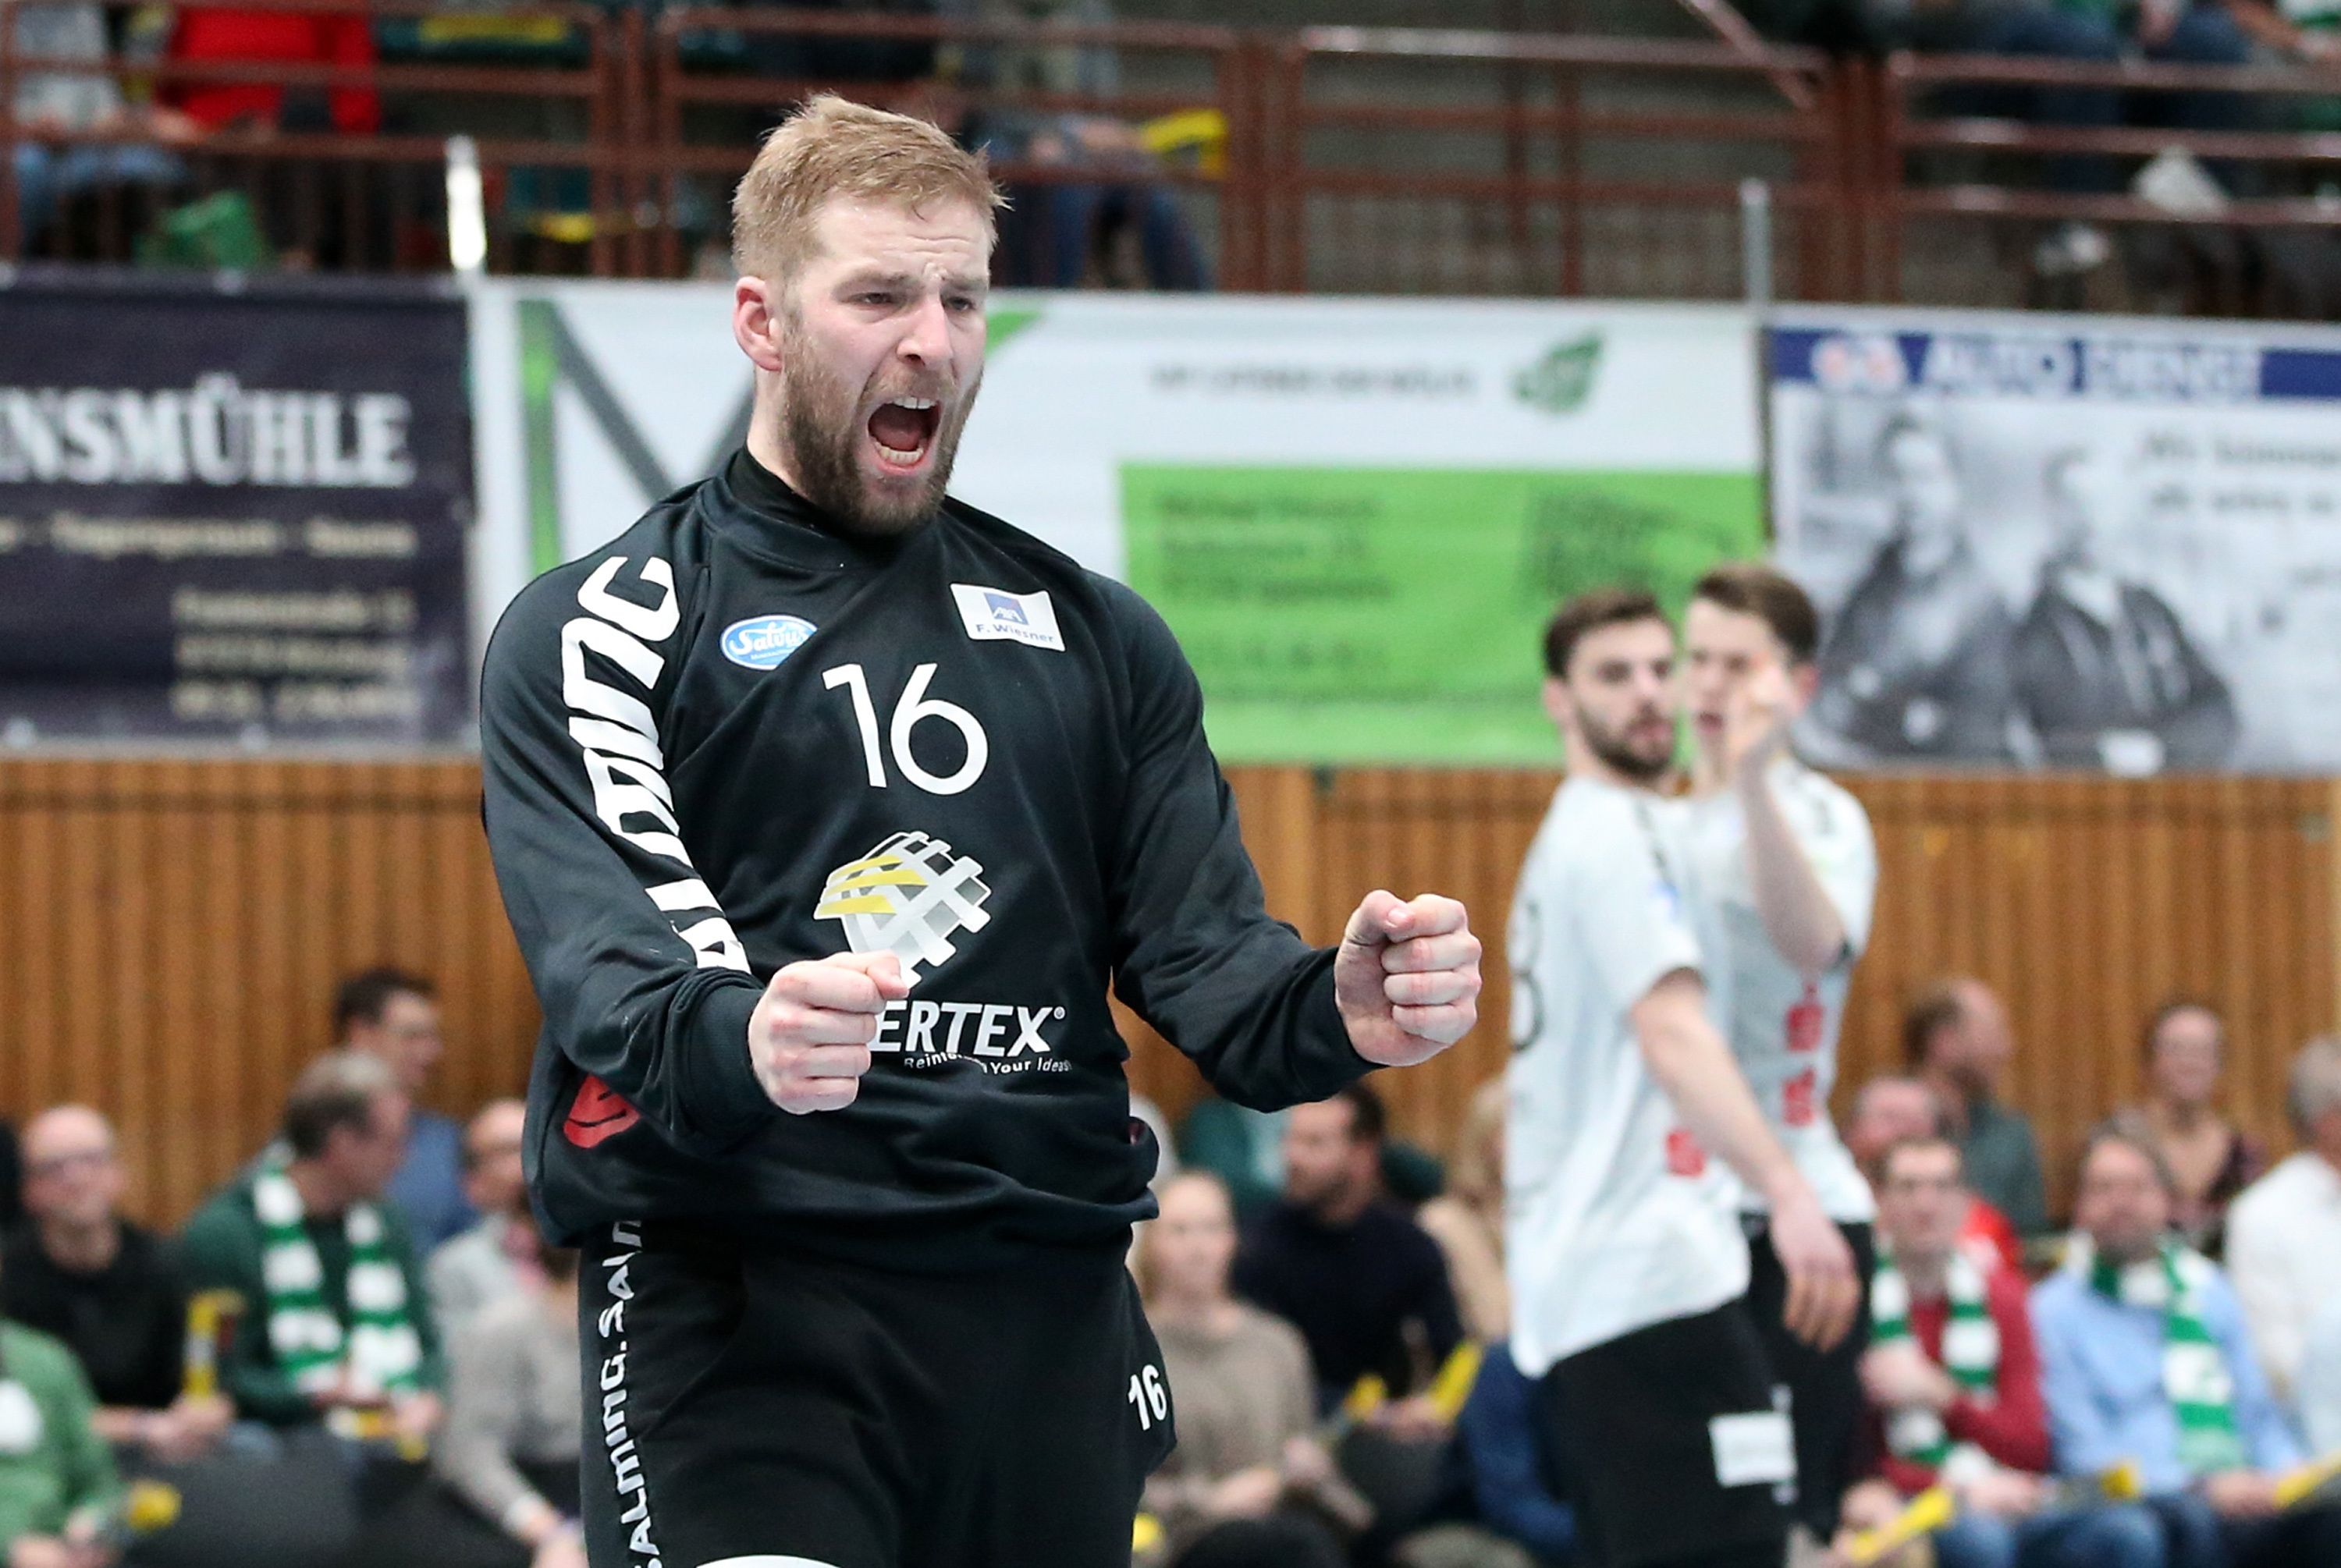 DKB 2. Handball-Bundesliga, DJK Rimpar Wölfe – TV Emsdetten